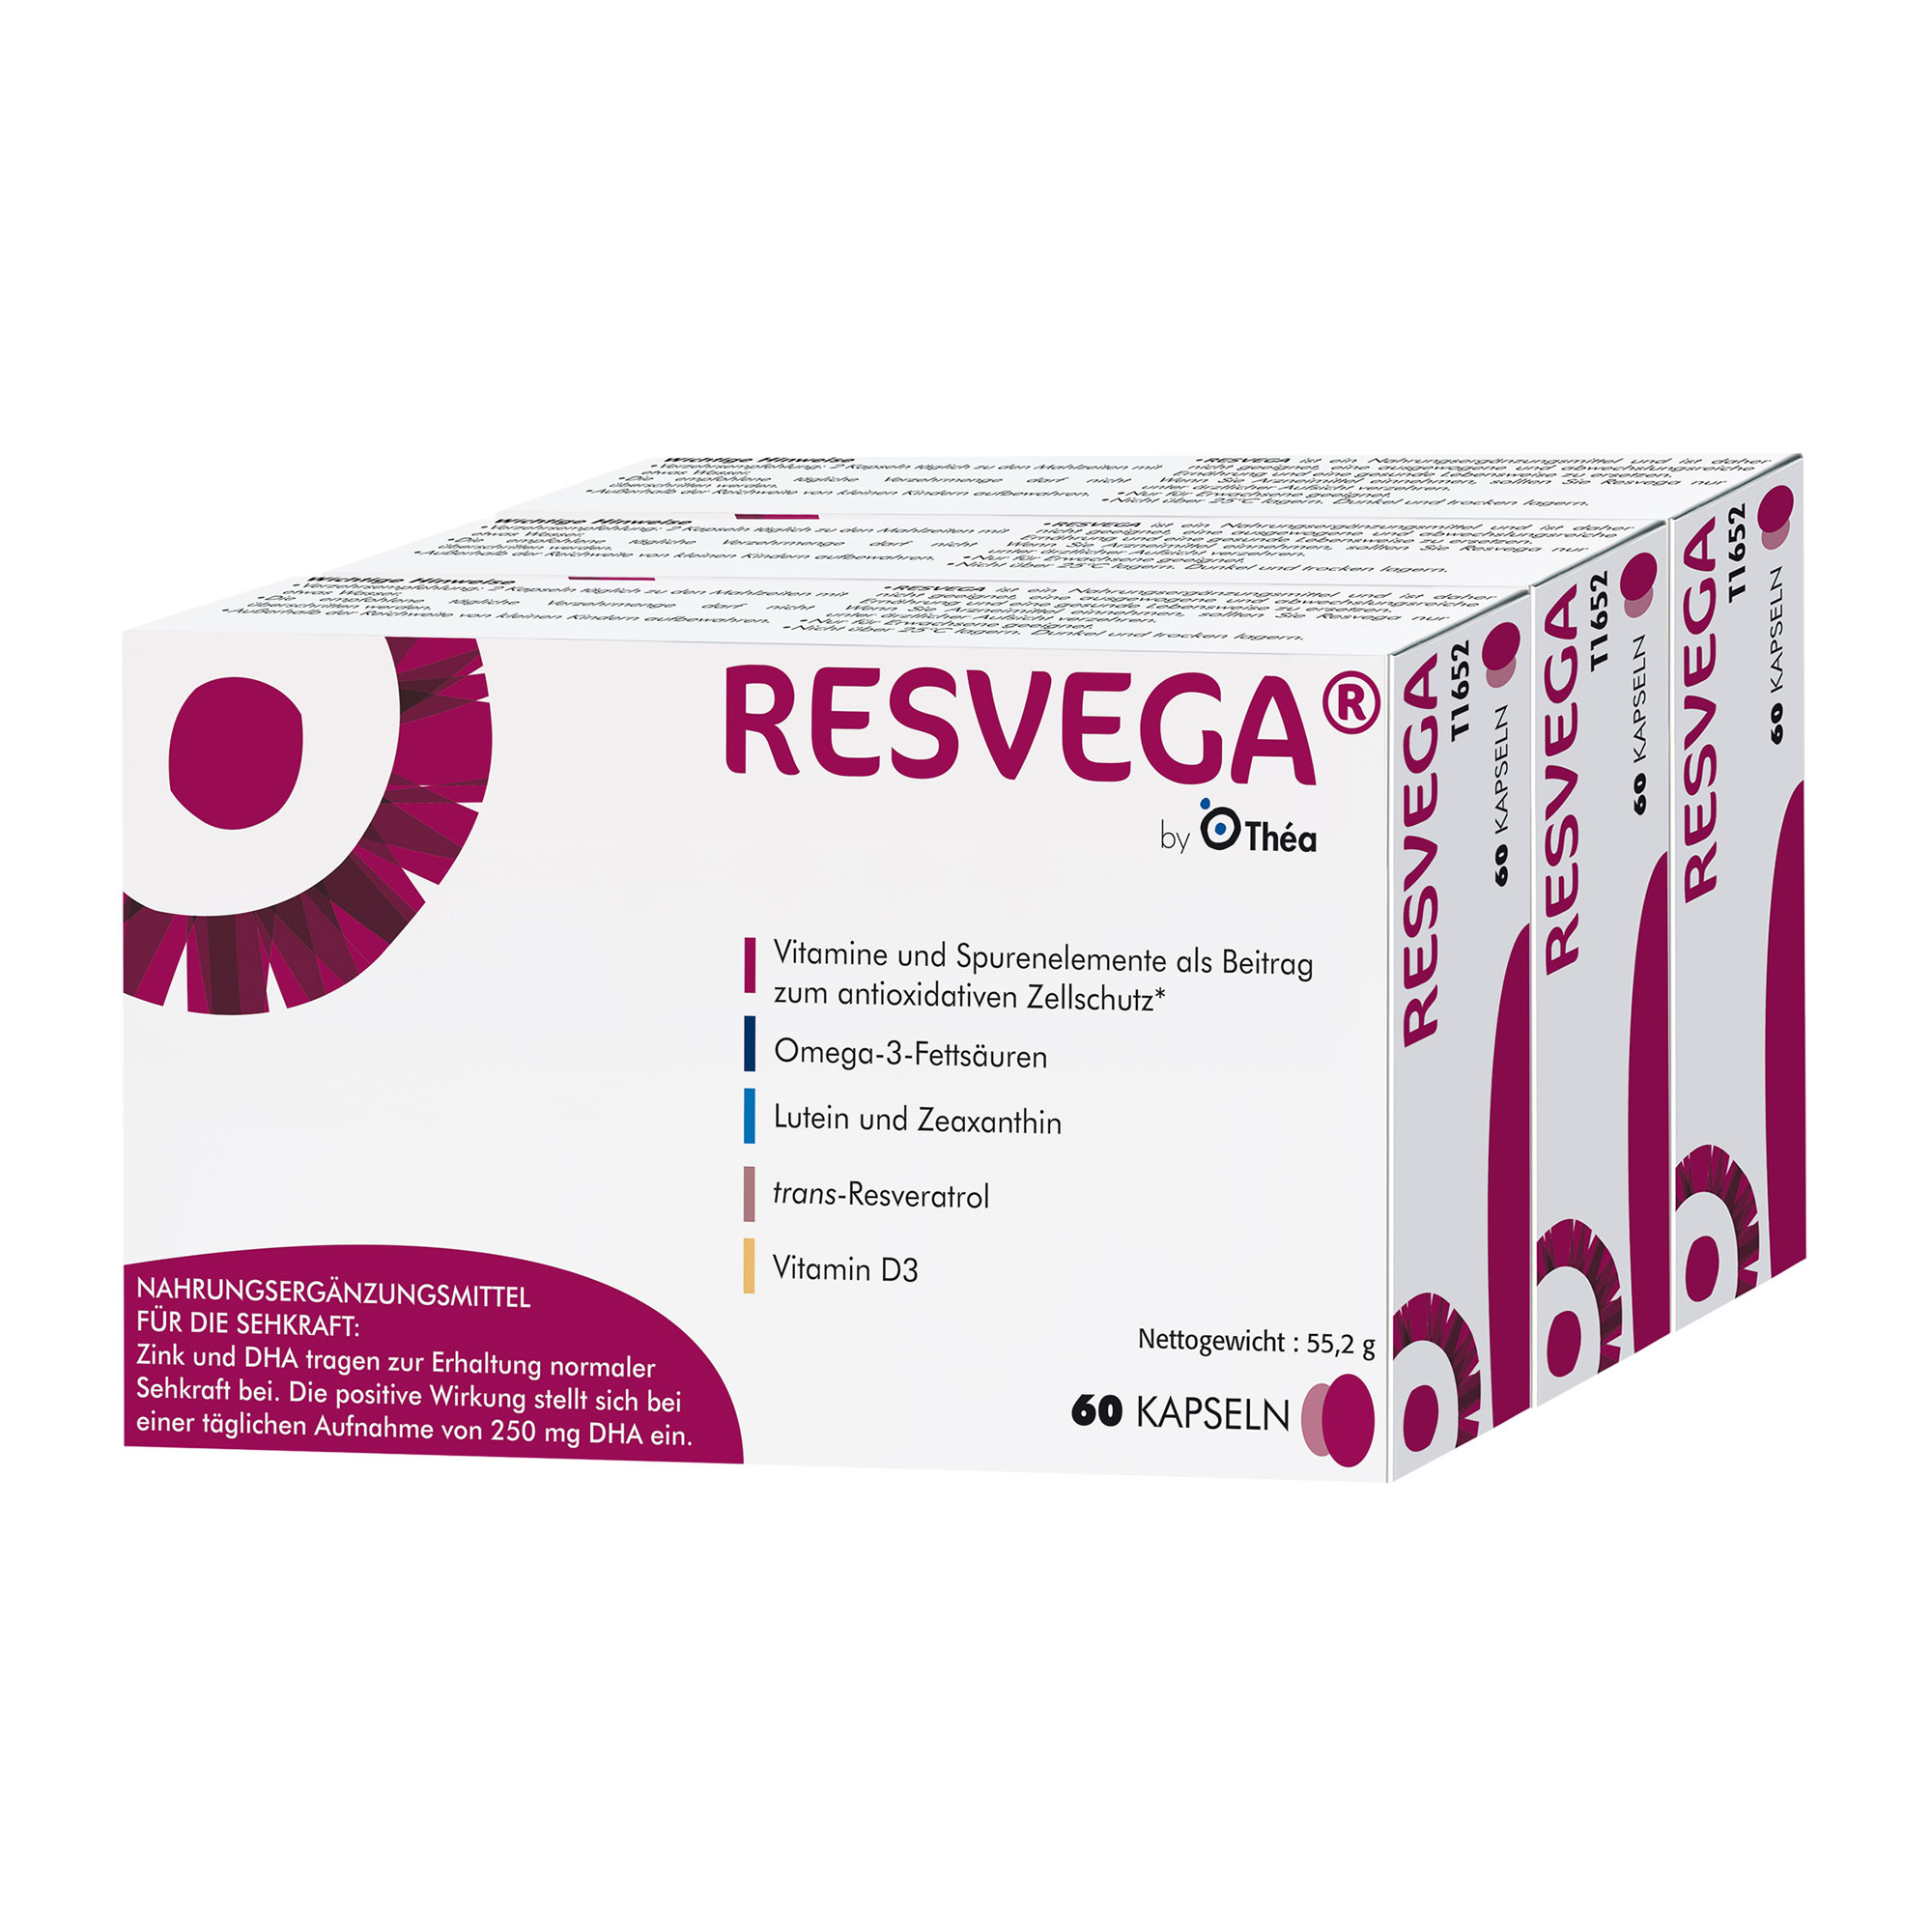 Nahrungsergänzungsmittel mit Resveratrol, Lutein, Zeaxanthin und den Omega-3-Fettsäuren DHA und EPA.